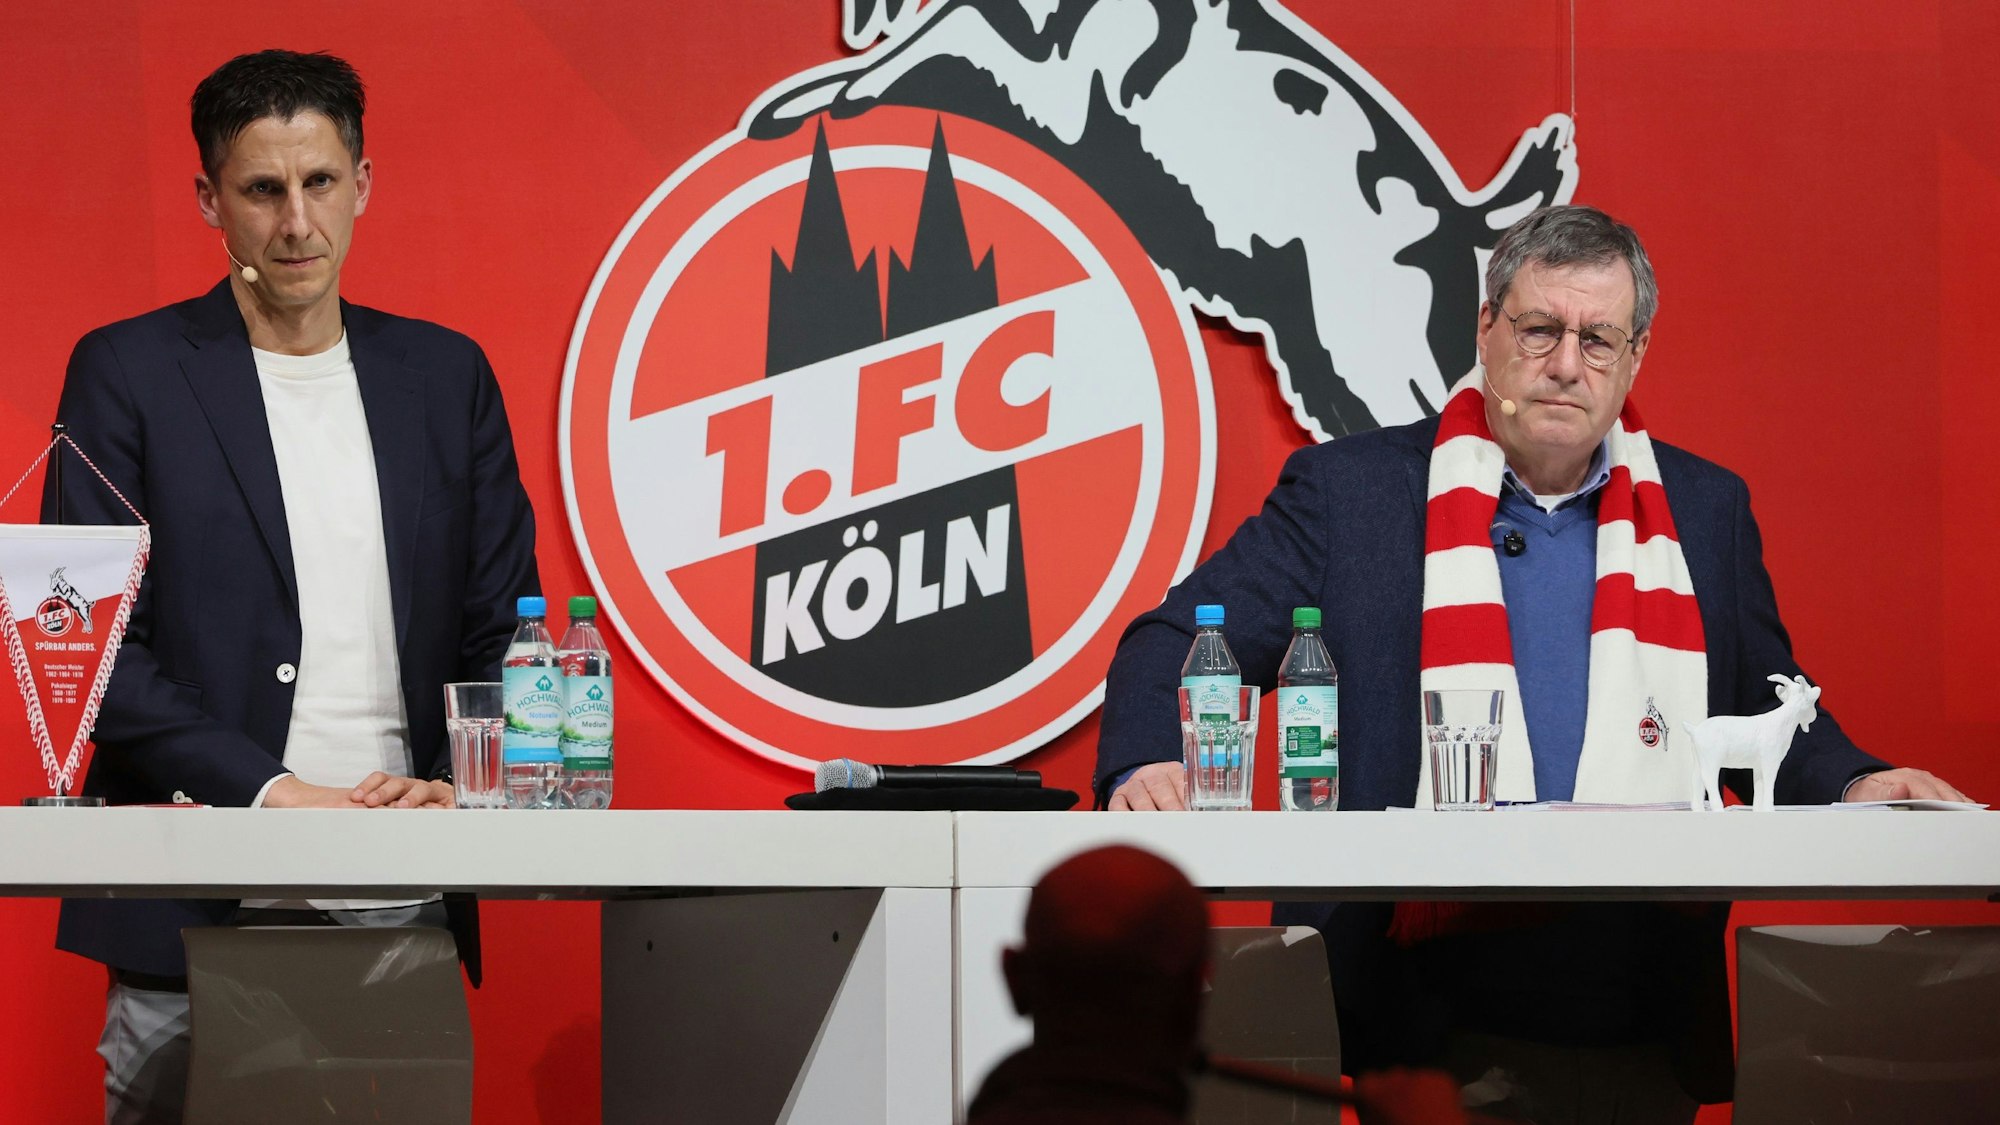 Christian Keller (Geschäftsführer) und Werner Wolf (Präsident des 1. FC Köln) beim FC-Mitgliederstammtisch in den MMC-Studios auf der Bühne.